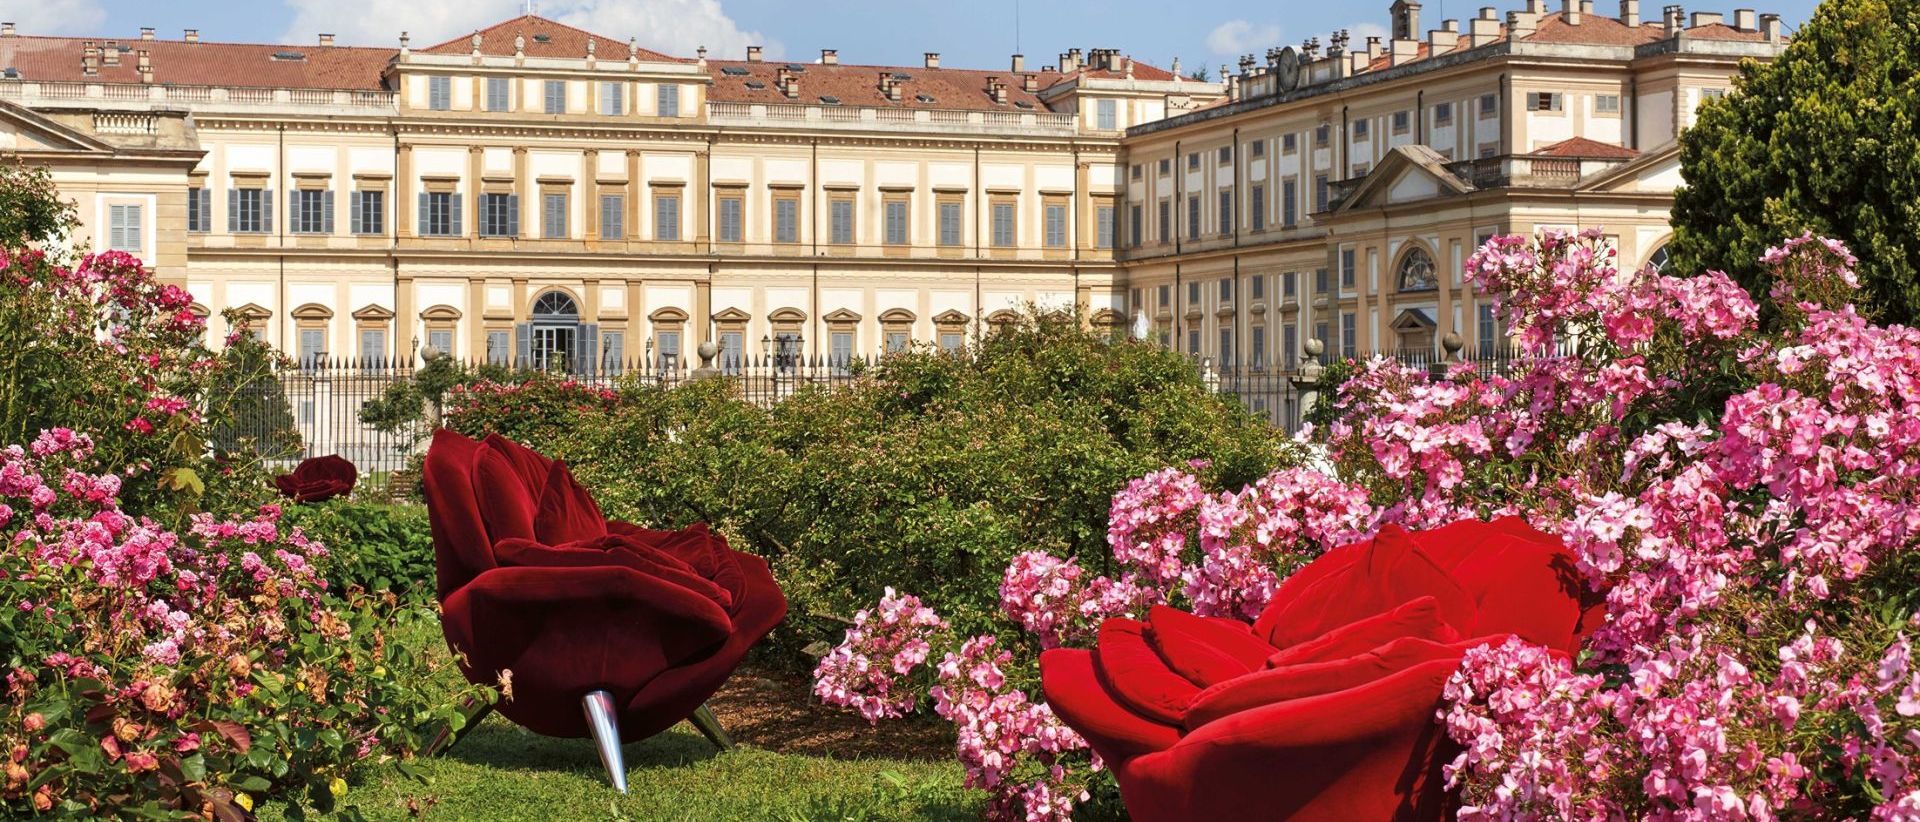   Rose Chair.  Le poltrone fioriscono tra le quattromila varietà di rose nell’Avancorte di fronte all’Orangerie. 